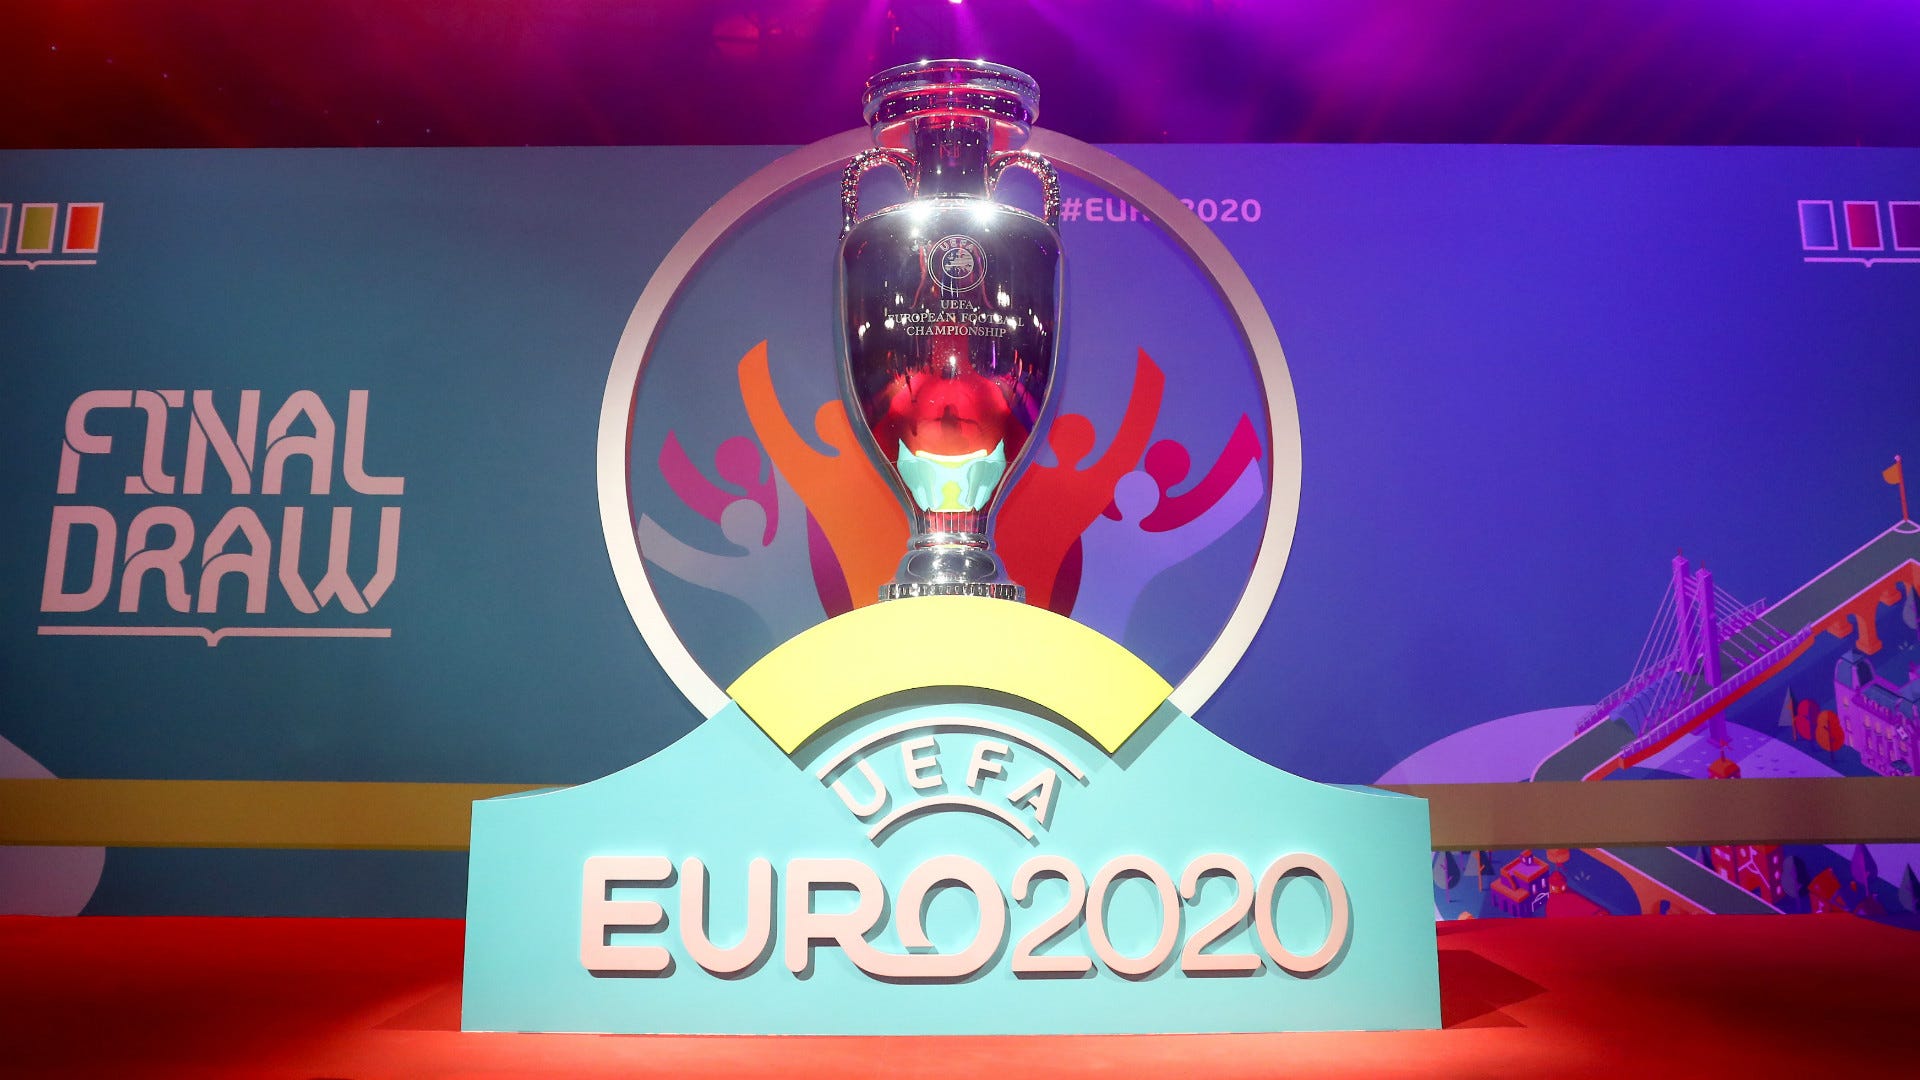 EURO 2020 khai mạc dại dịch và sức mạnh Pháp  EURO 2021